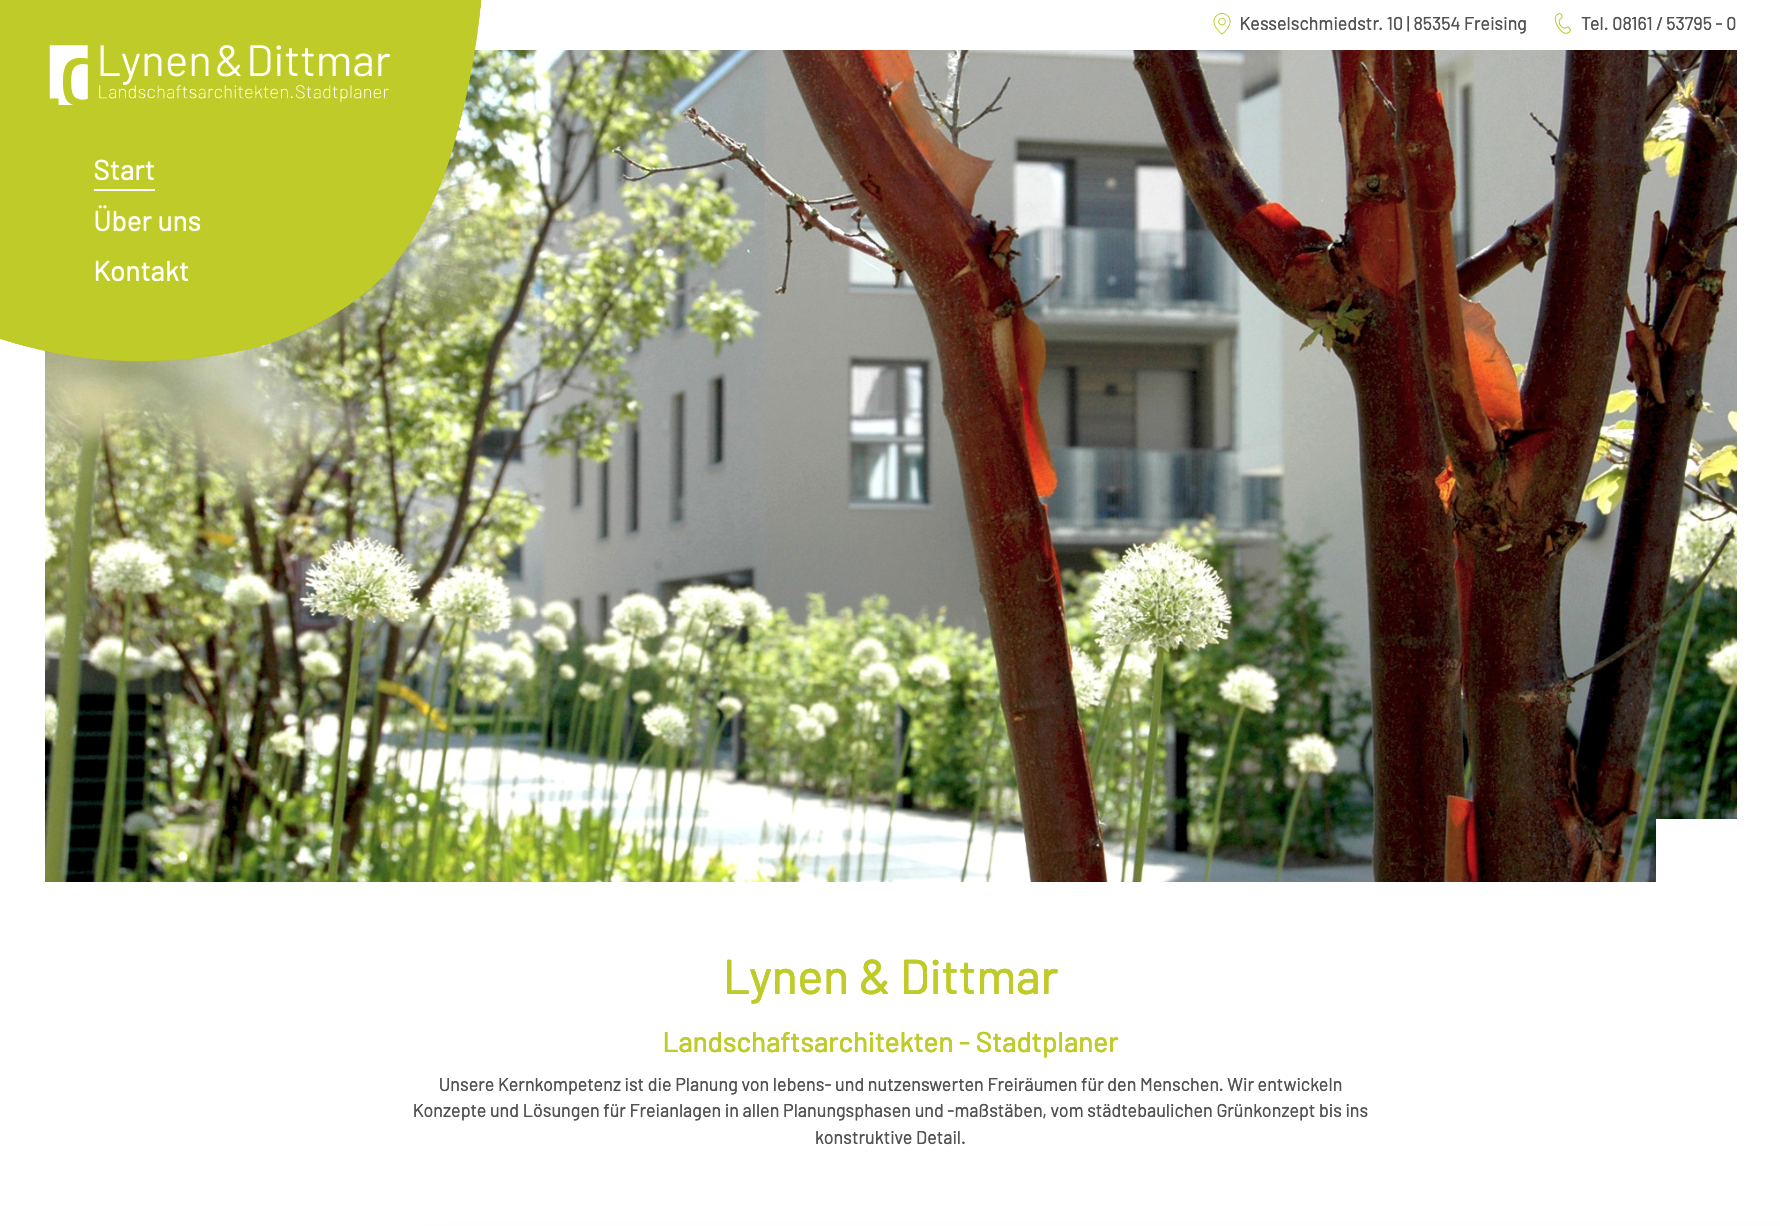 Lynen & Dittmar Landschaftsarchitekten / Stadtplaner